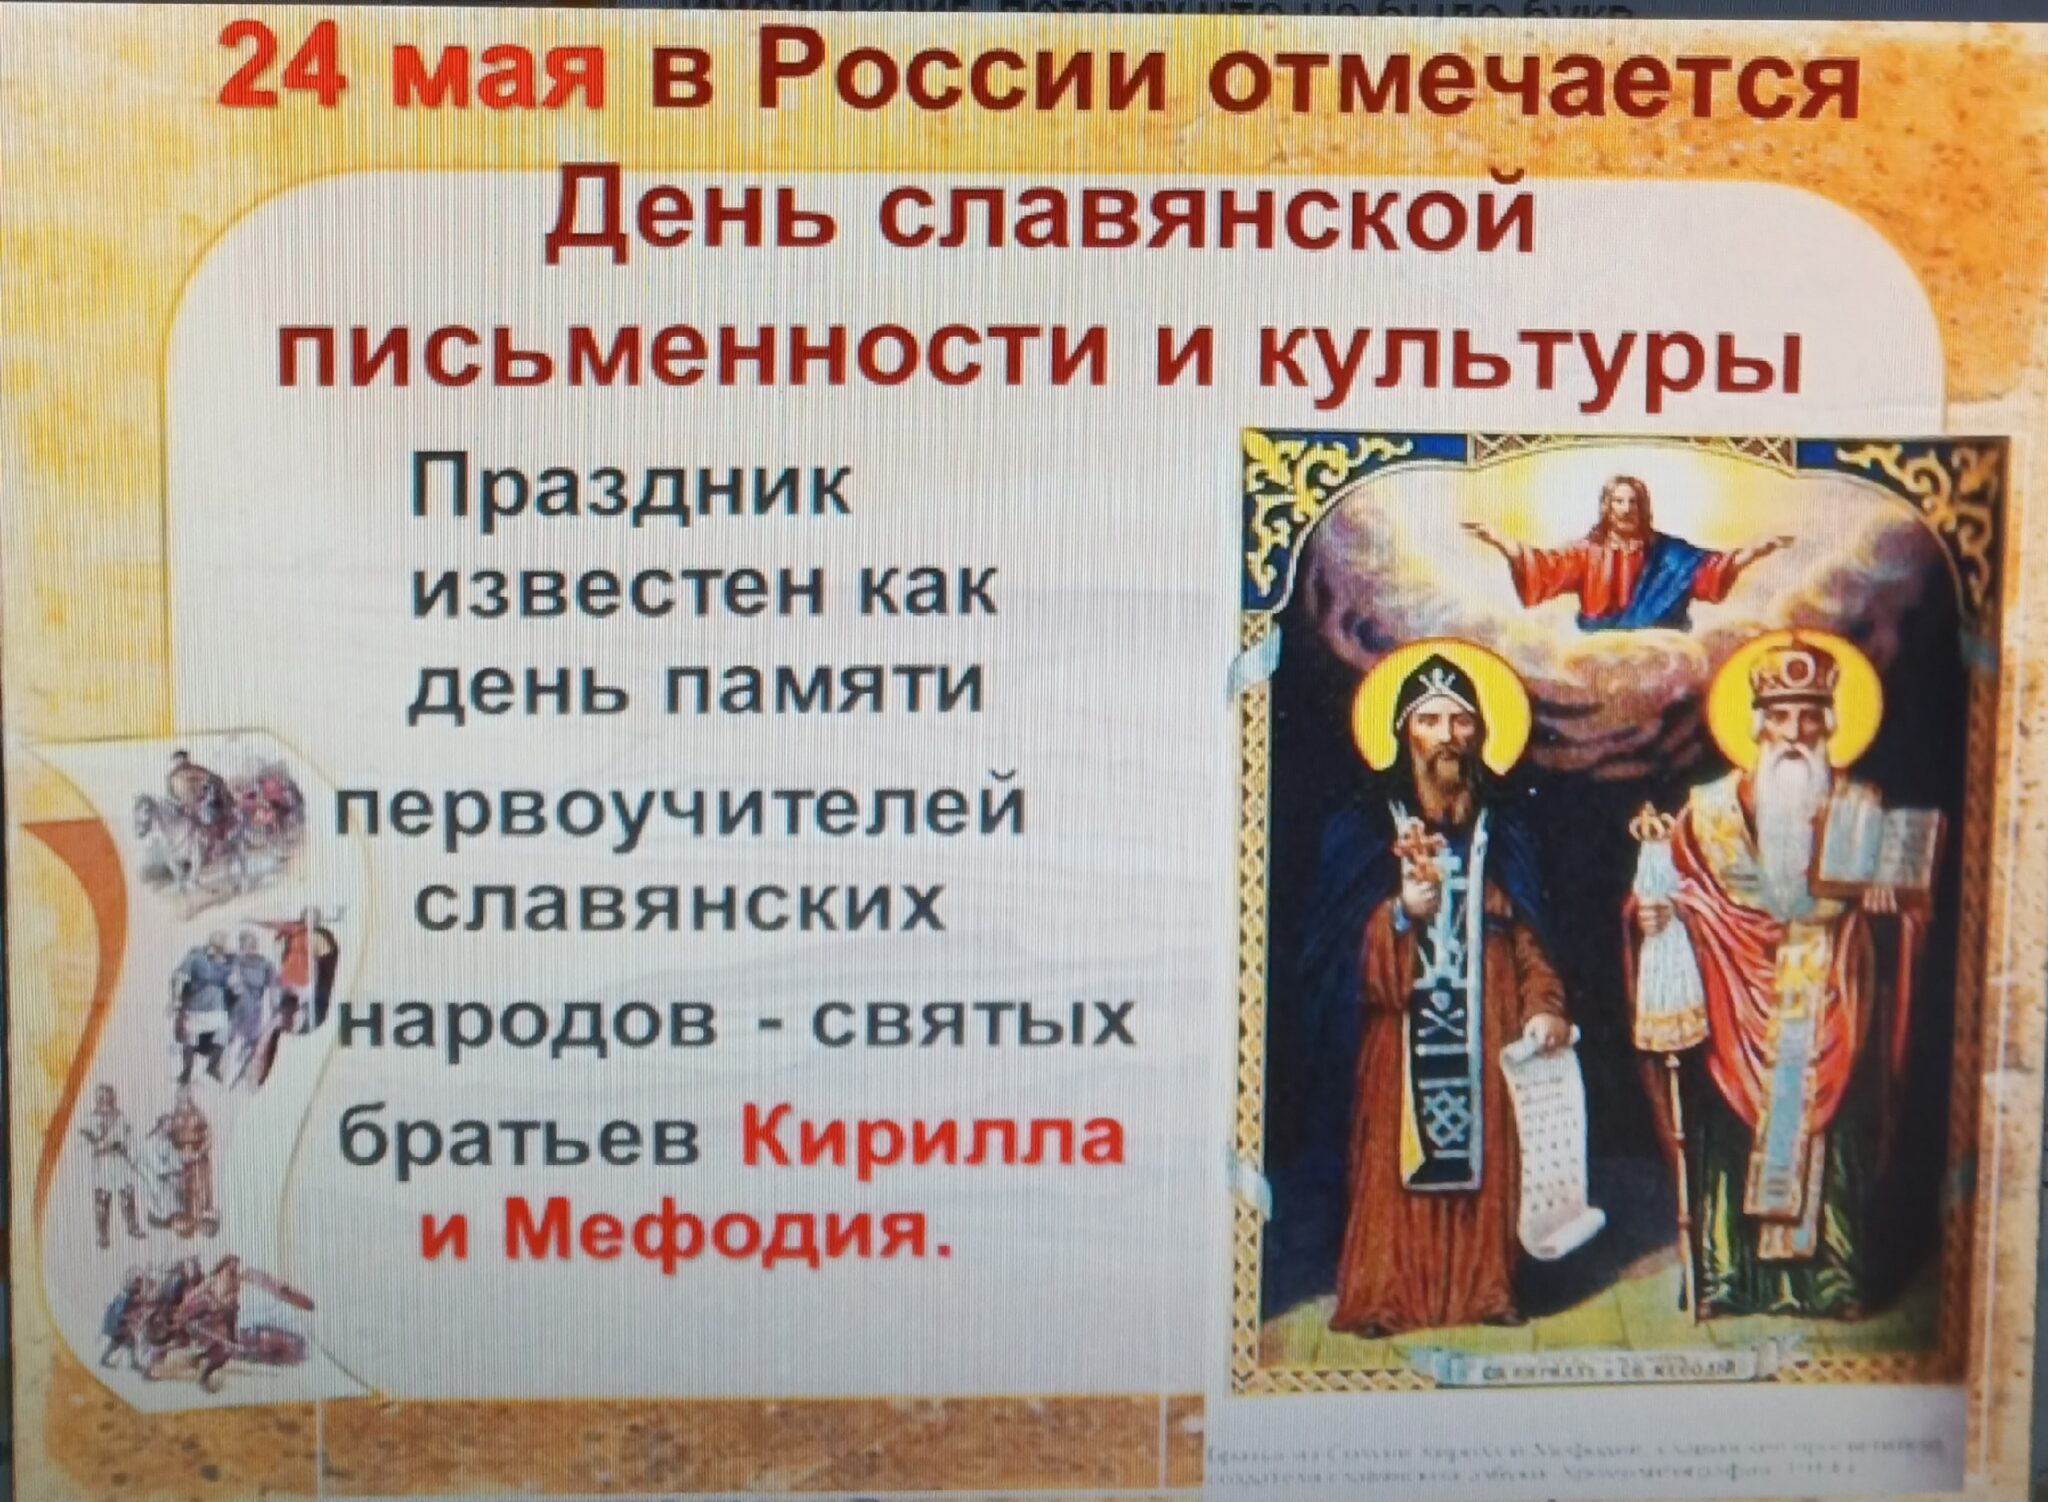 Праздники как память культуры. 24 Мая отмечается день славянской письменности и культуры..